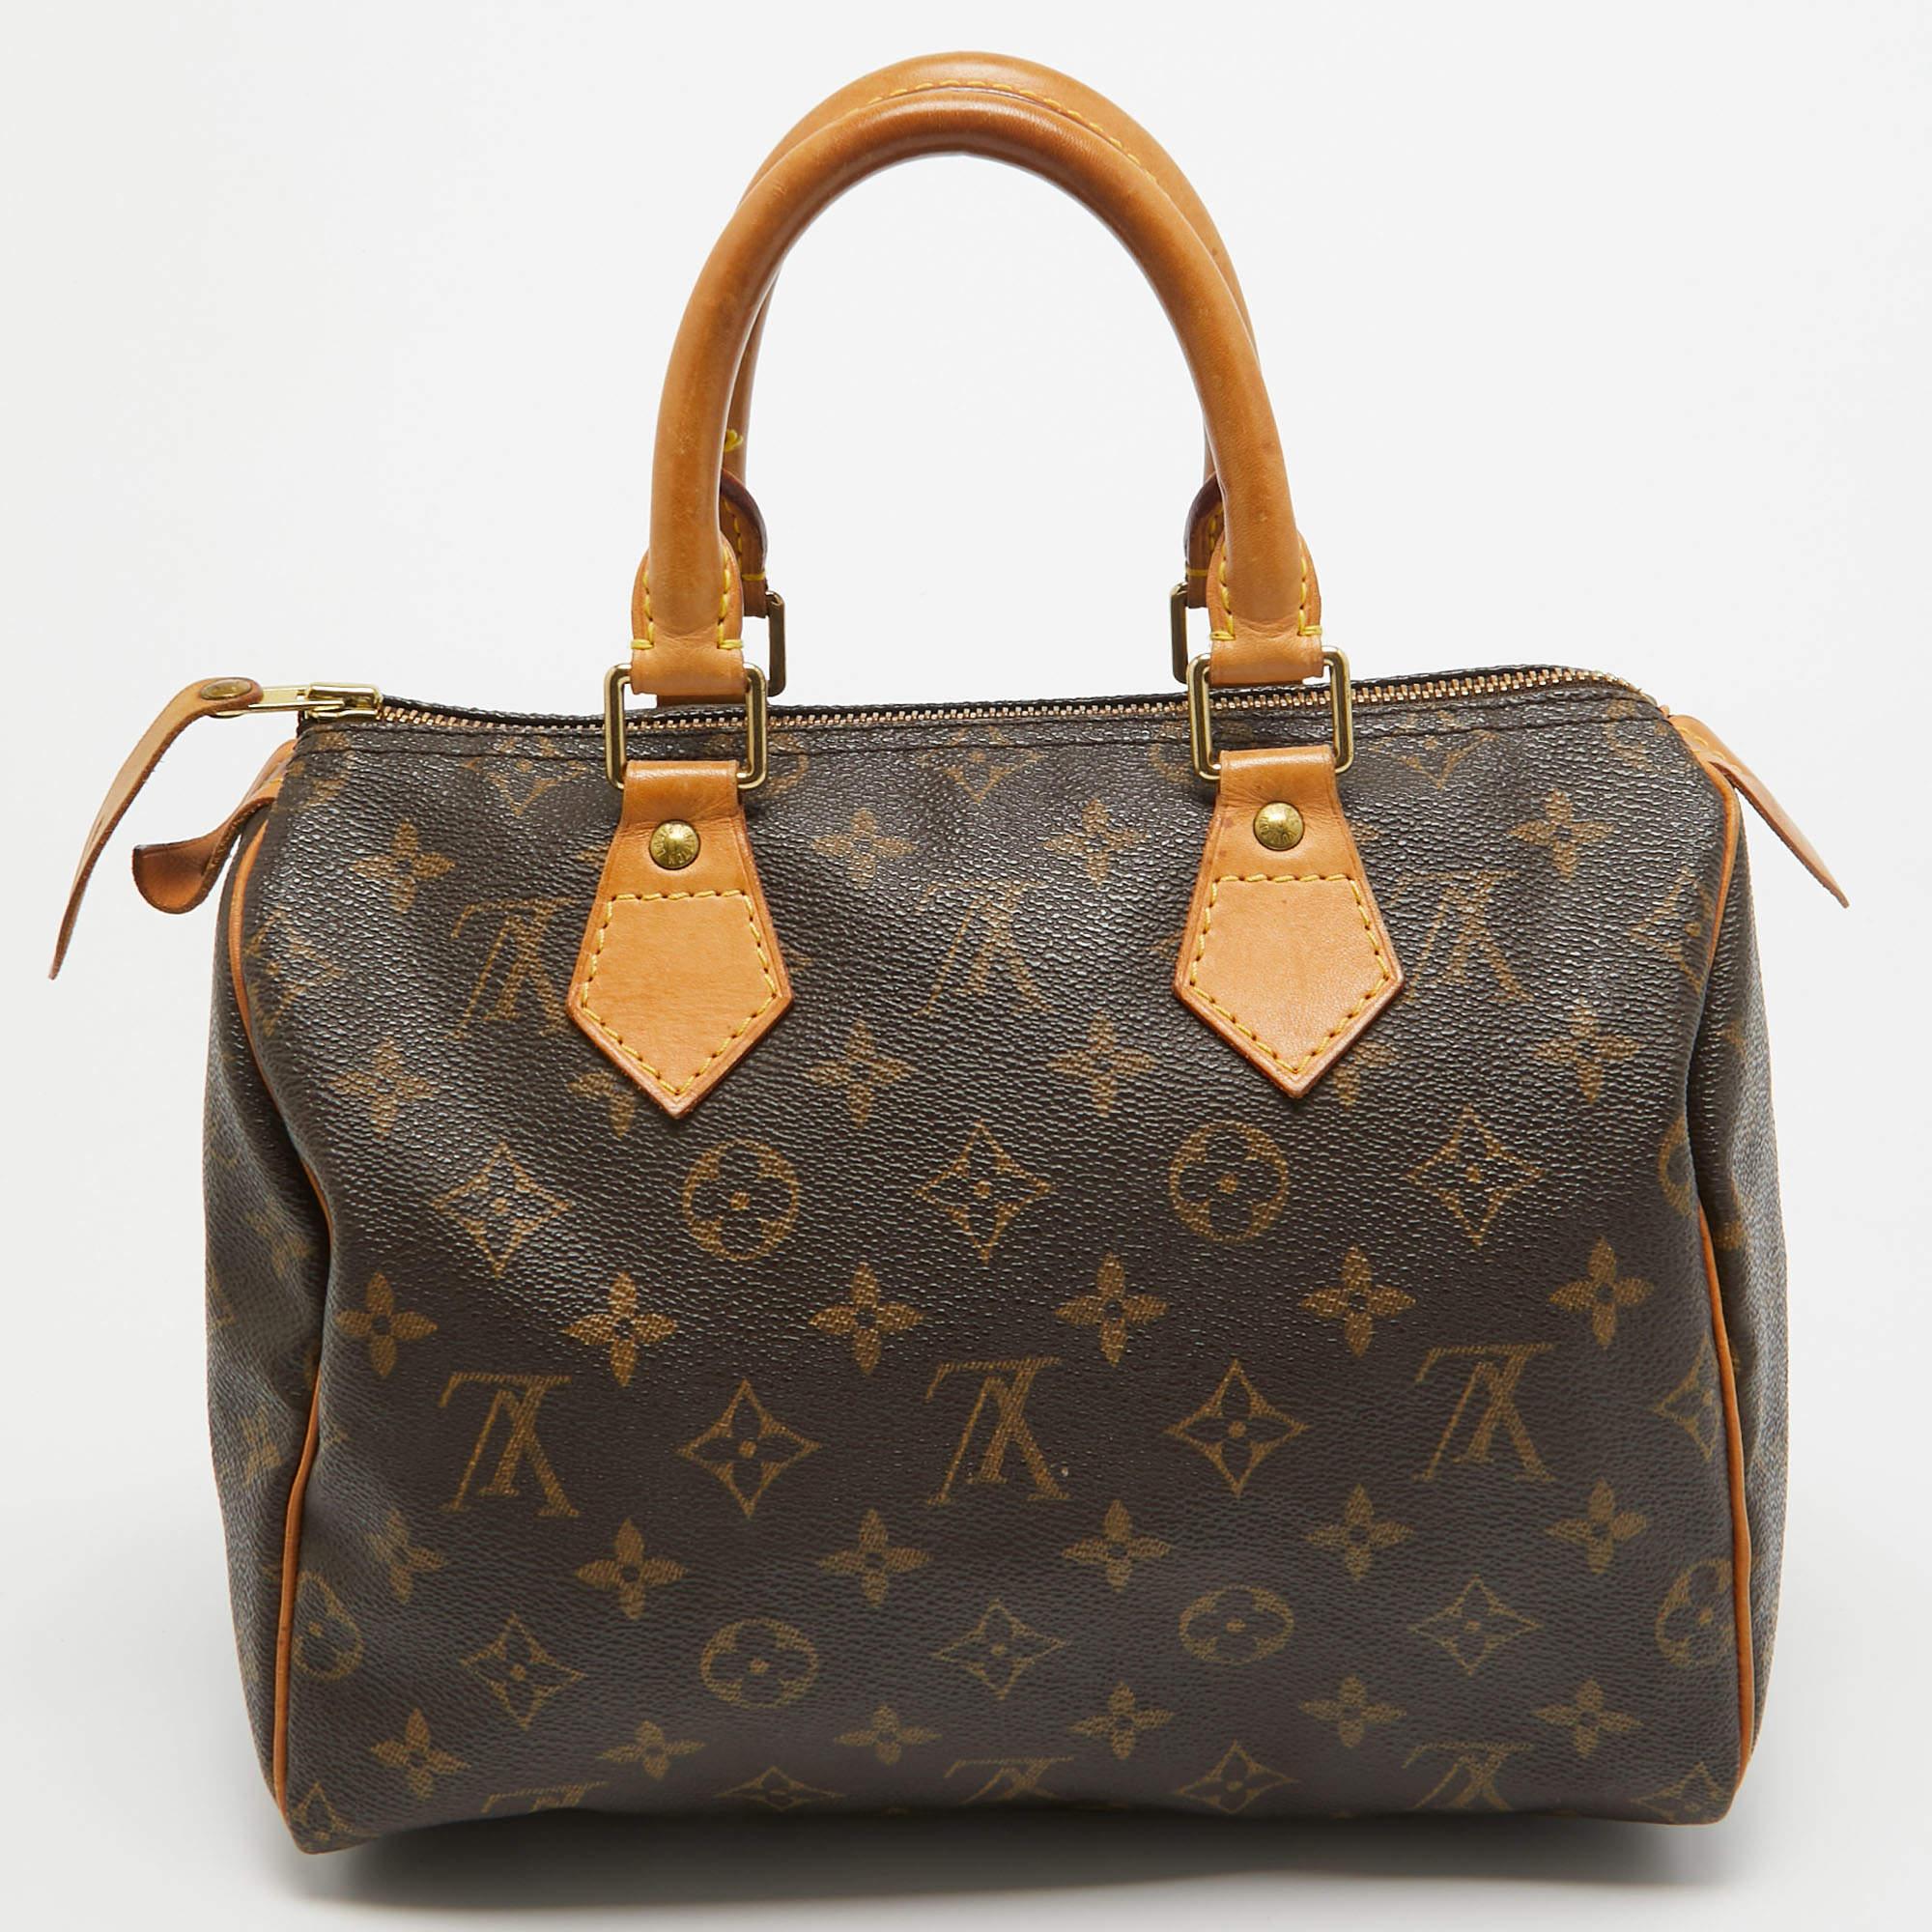 L'emblématique Speedy de Louis Vuitton a d'abord été créé pour un usage quotidien, comme une version plus petite de leur célèbre sac Keepall. Nous avons ici le Speedy 25 en toile monogramme ! Ce Speedy est fabriqué en toile enduite et en cuir, avec